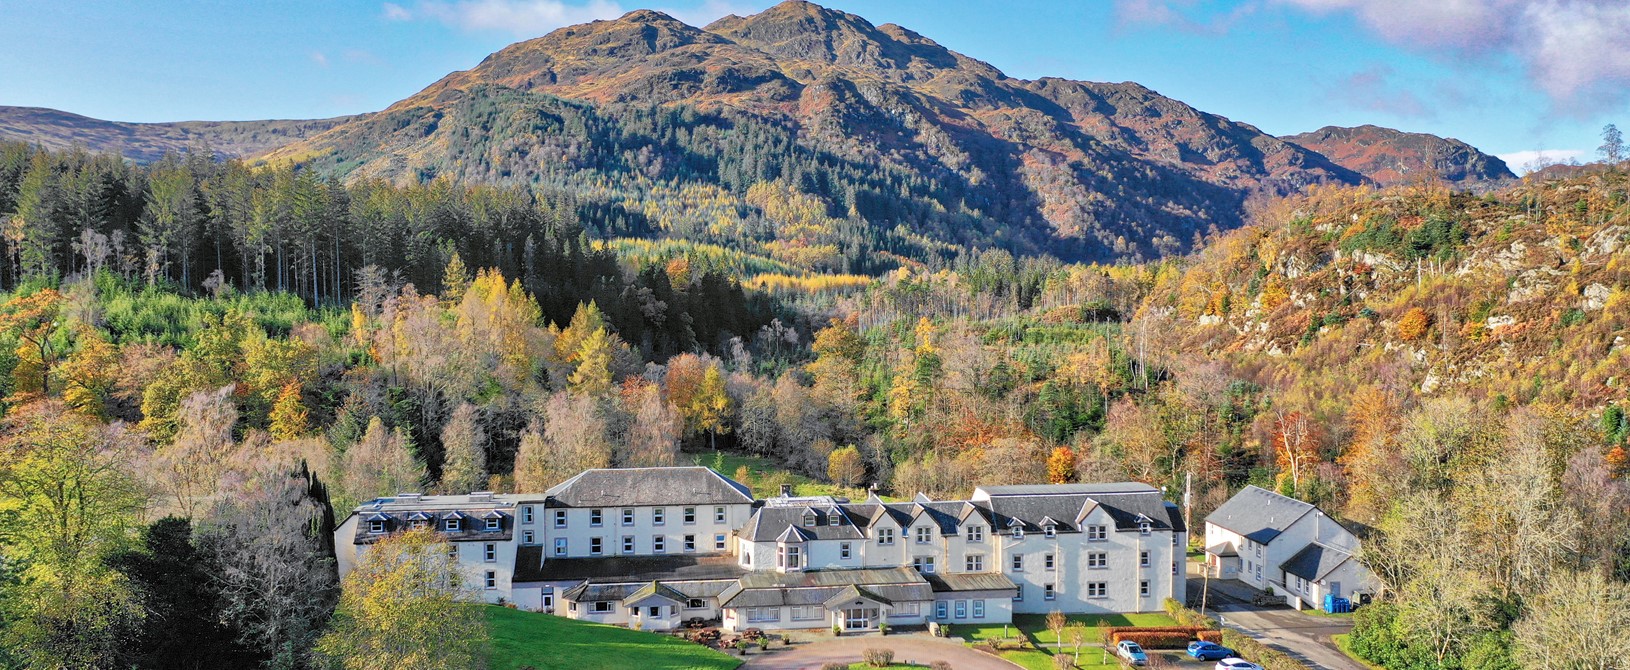 An autumn image of loch Achray Hotel